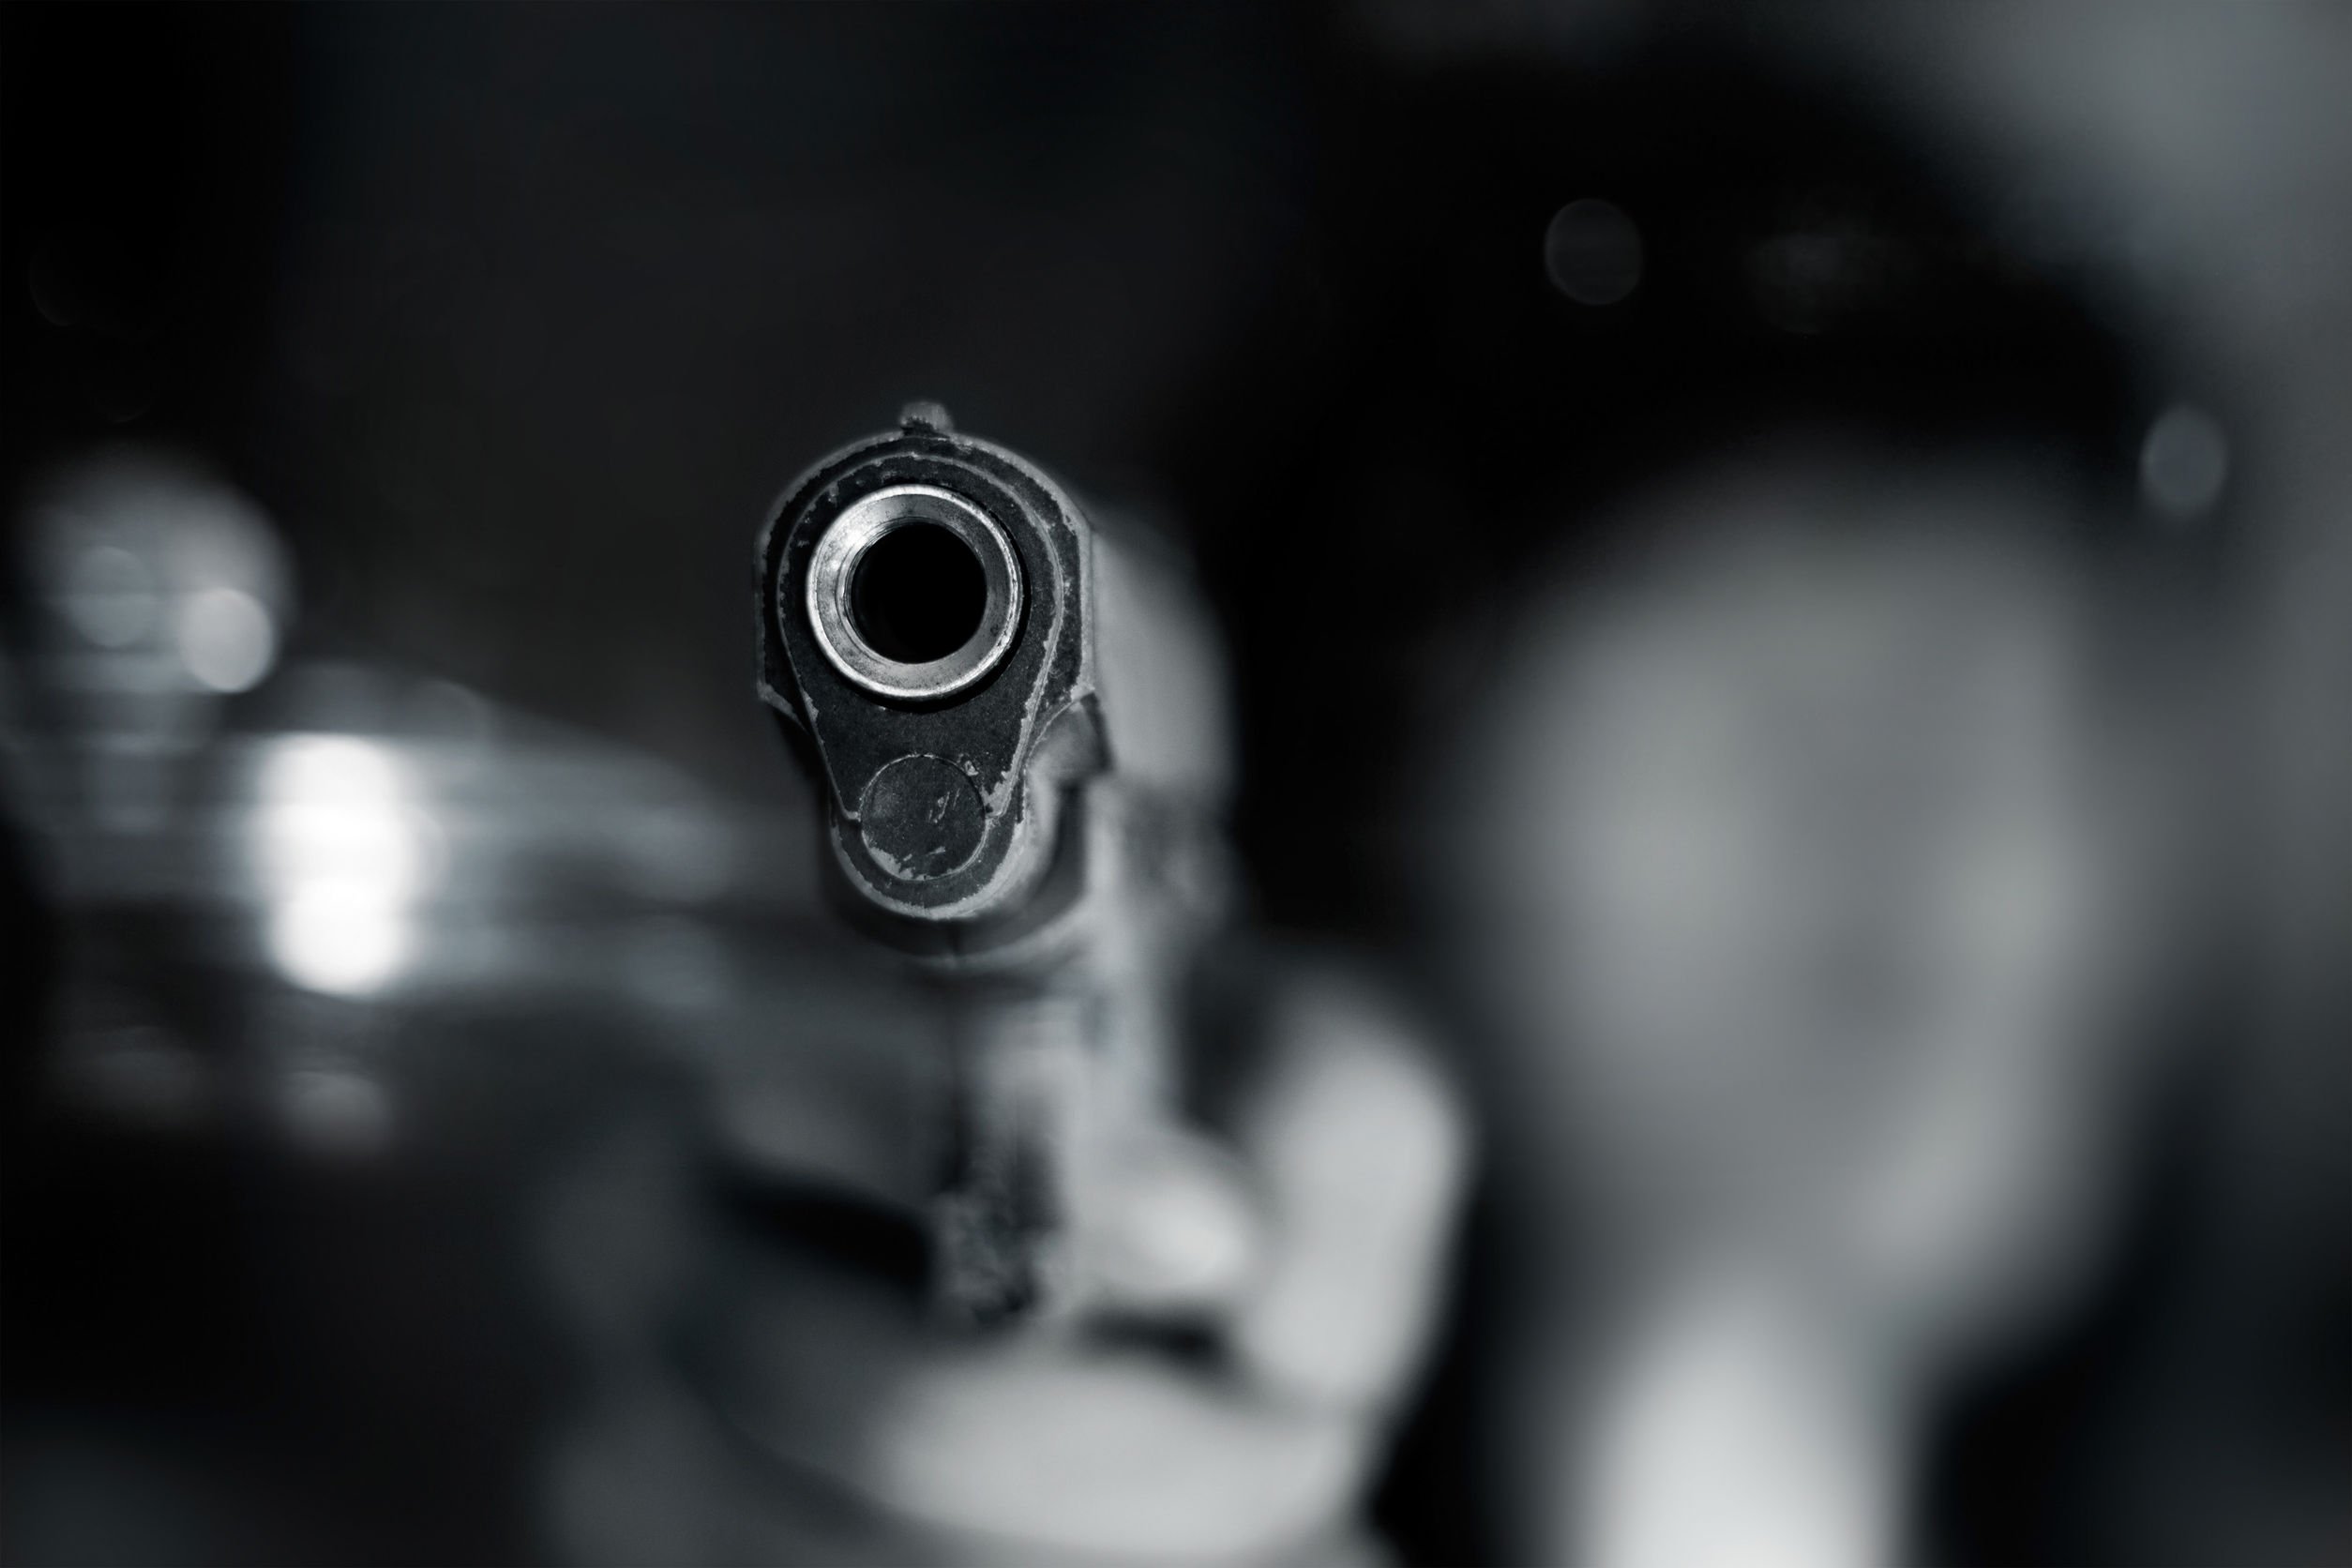 Județul Constanța: Bărbat împușcat în cap!